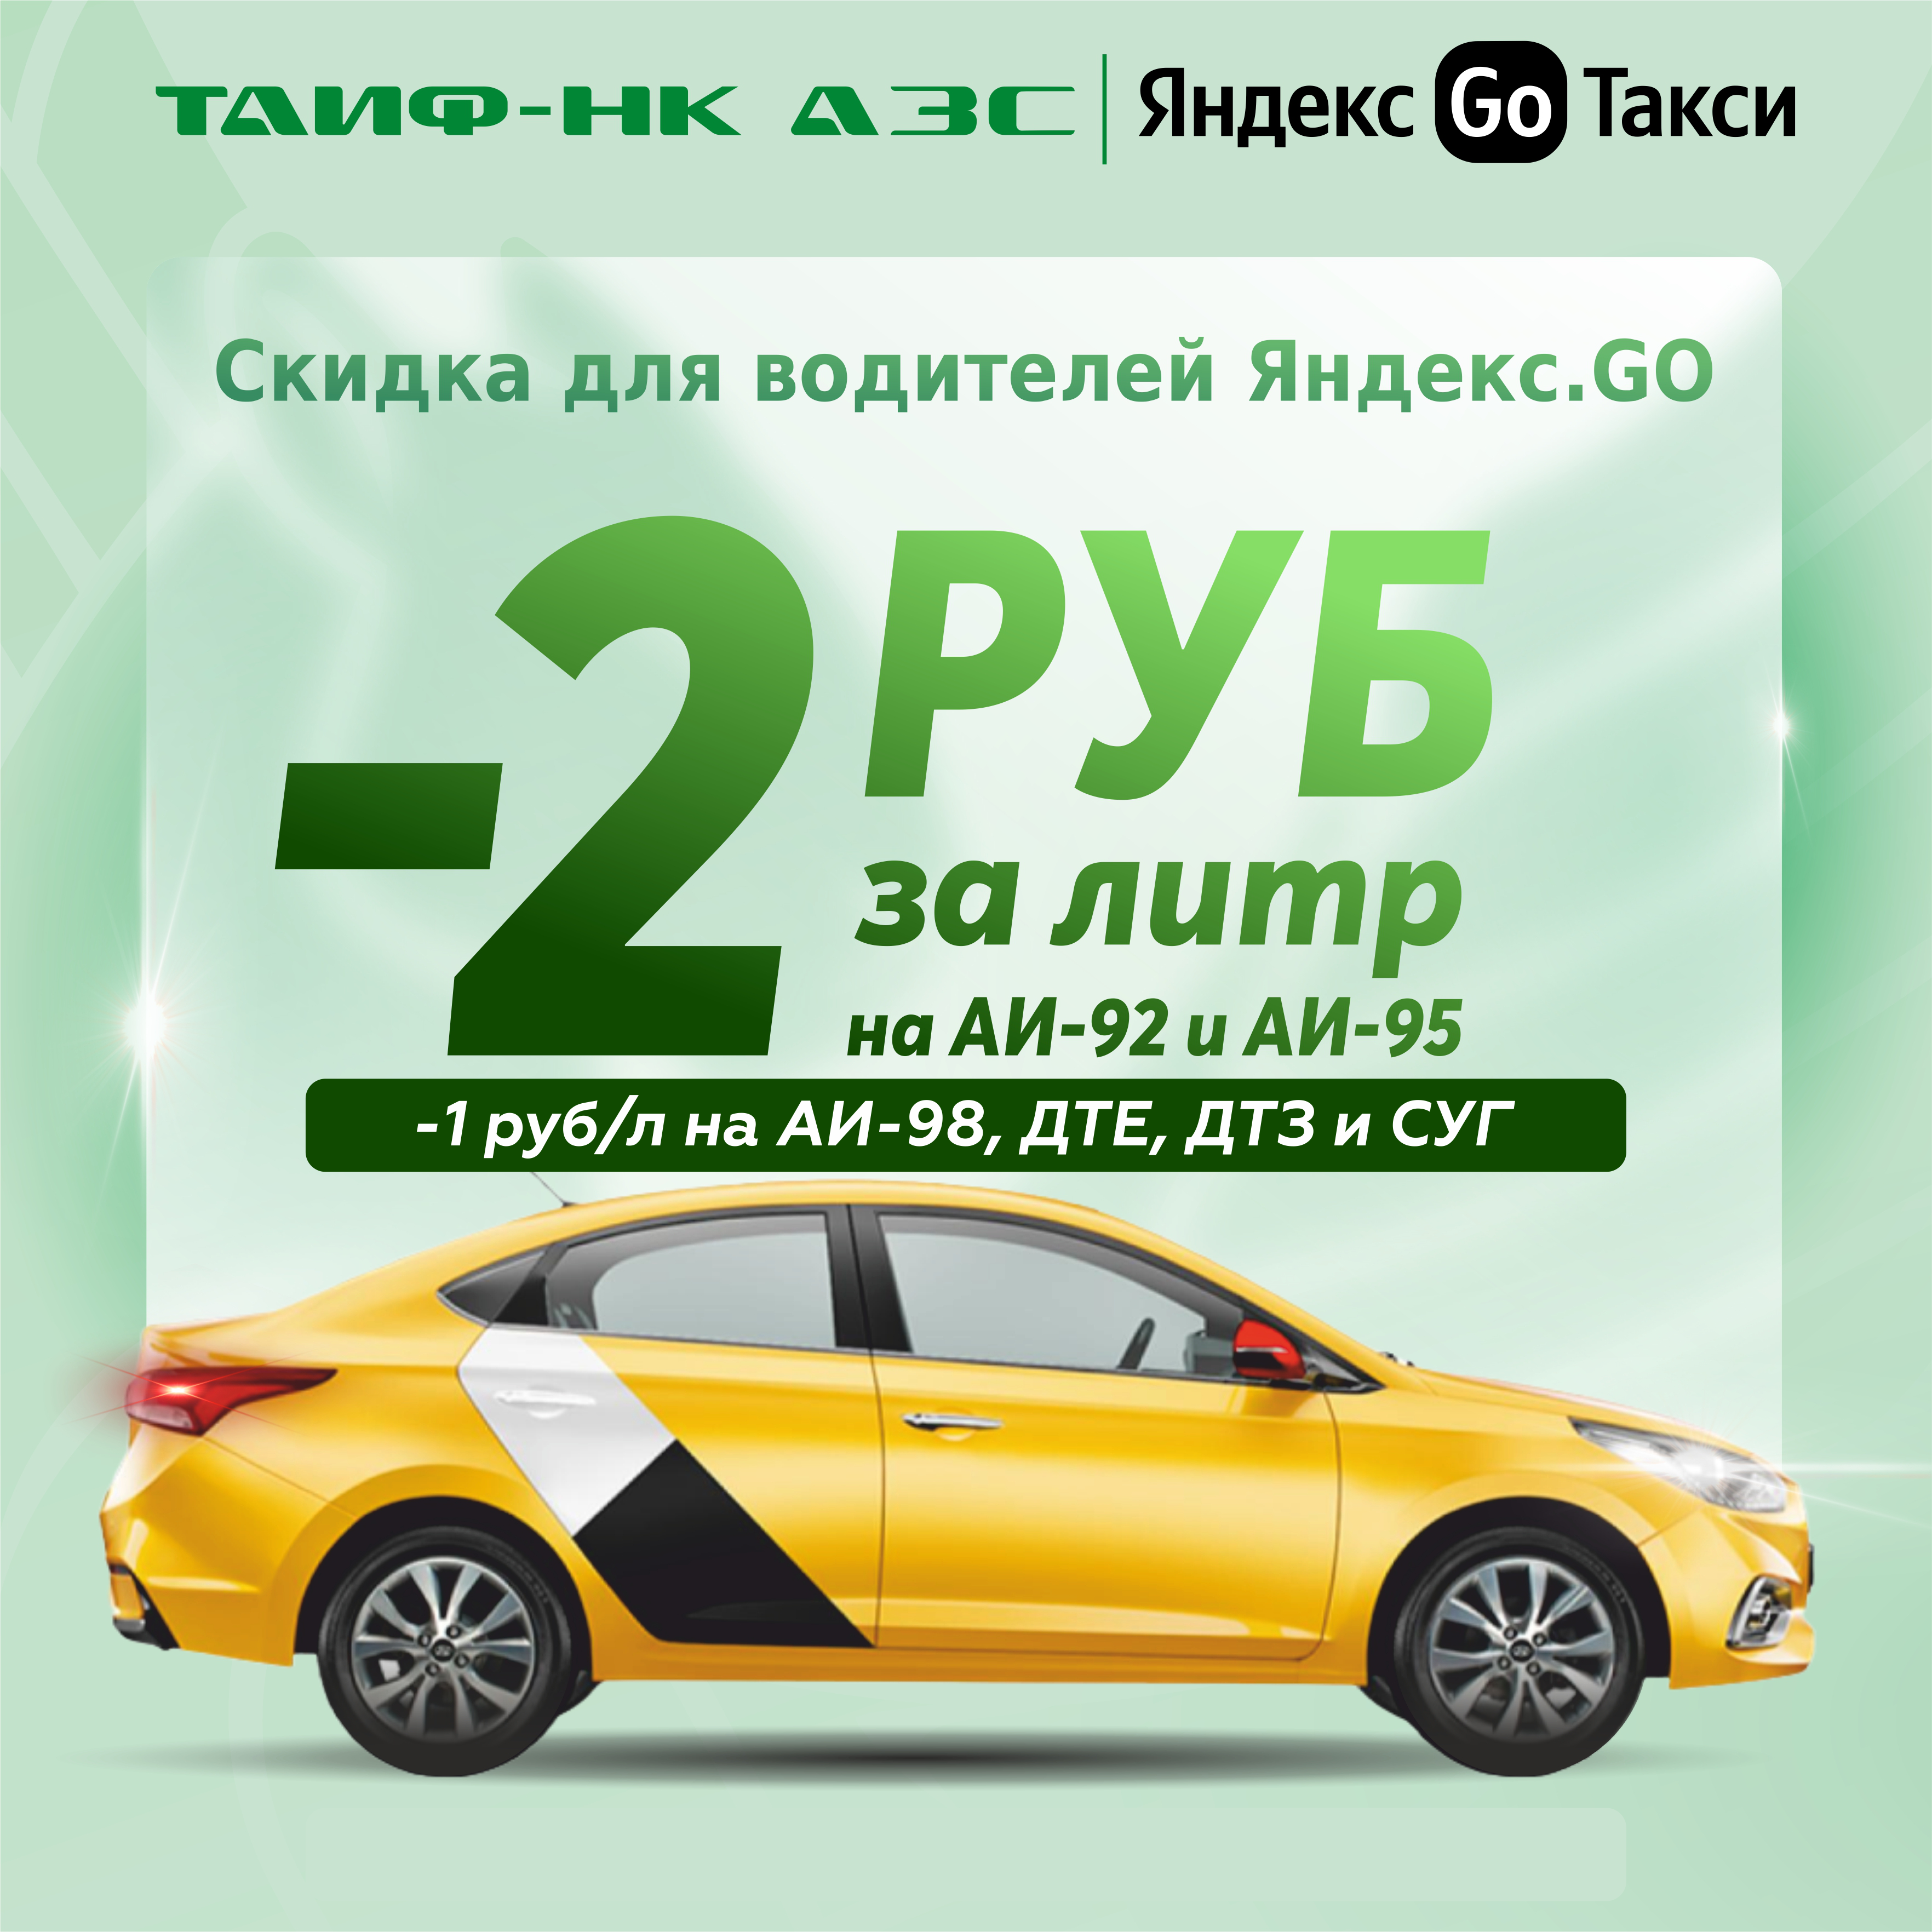 Продлеваем скидки для водителей "Яндекс.GO"!